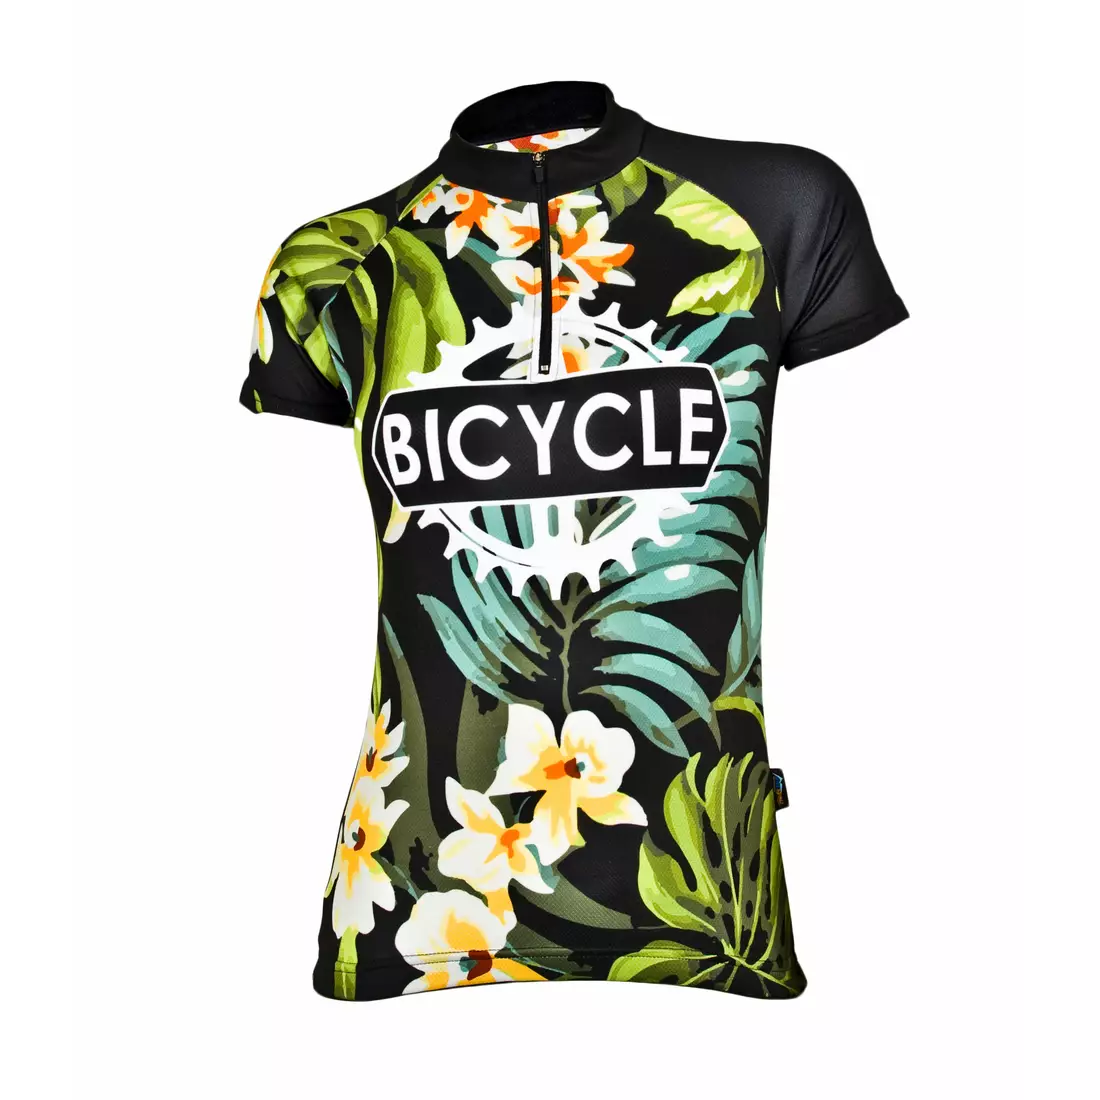 MikeSPORT DESIGN FLOWER BIKE women's cycling jersey